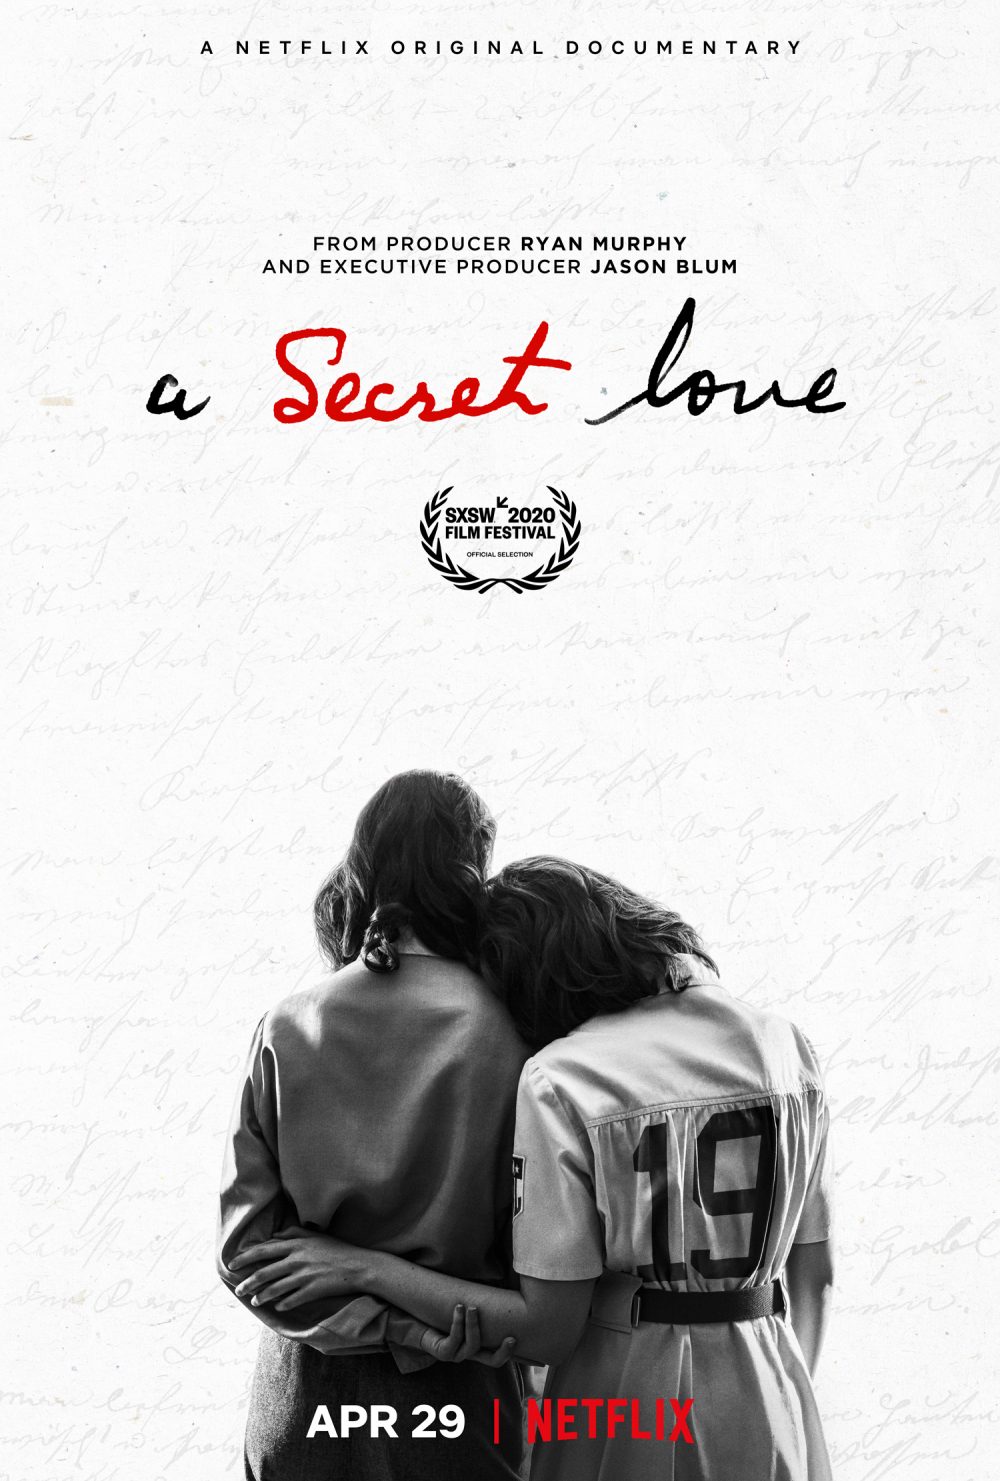 Phim đồng tính nữ trên Netflix: Tình yêu bí mật - A Secret Love (2020)